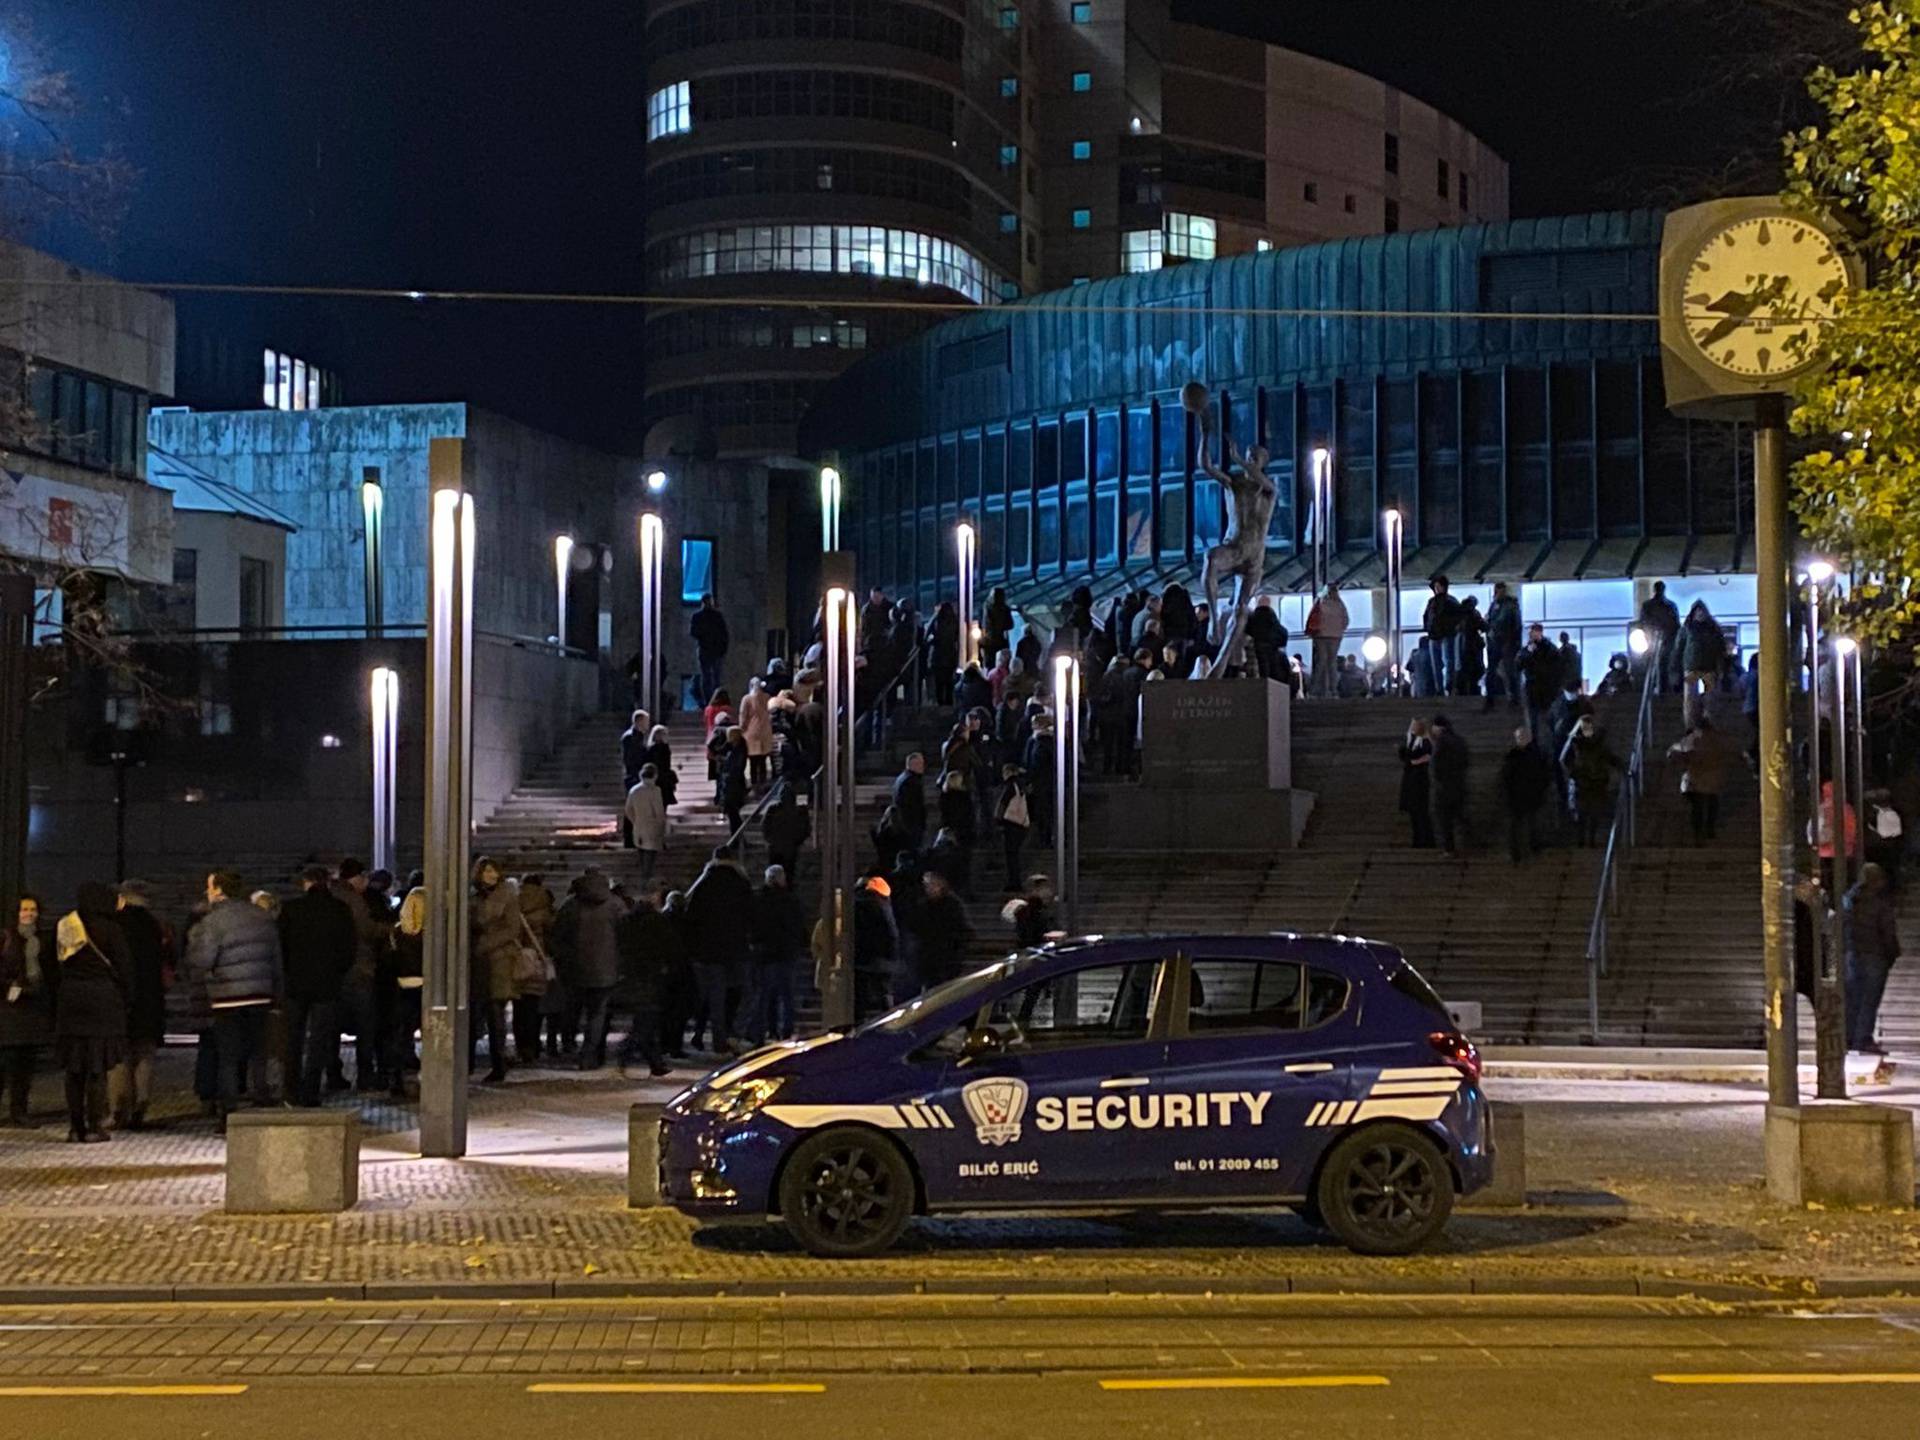 Publiku evakuirali s koncerta klape Intrade zbog dojave o bombi, policija: Dojava je lažna